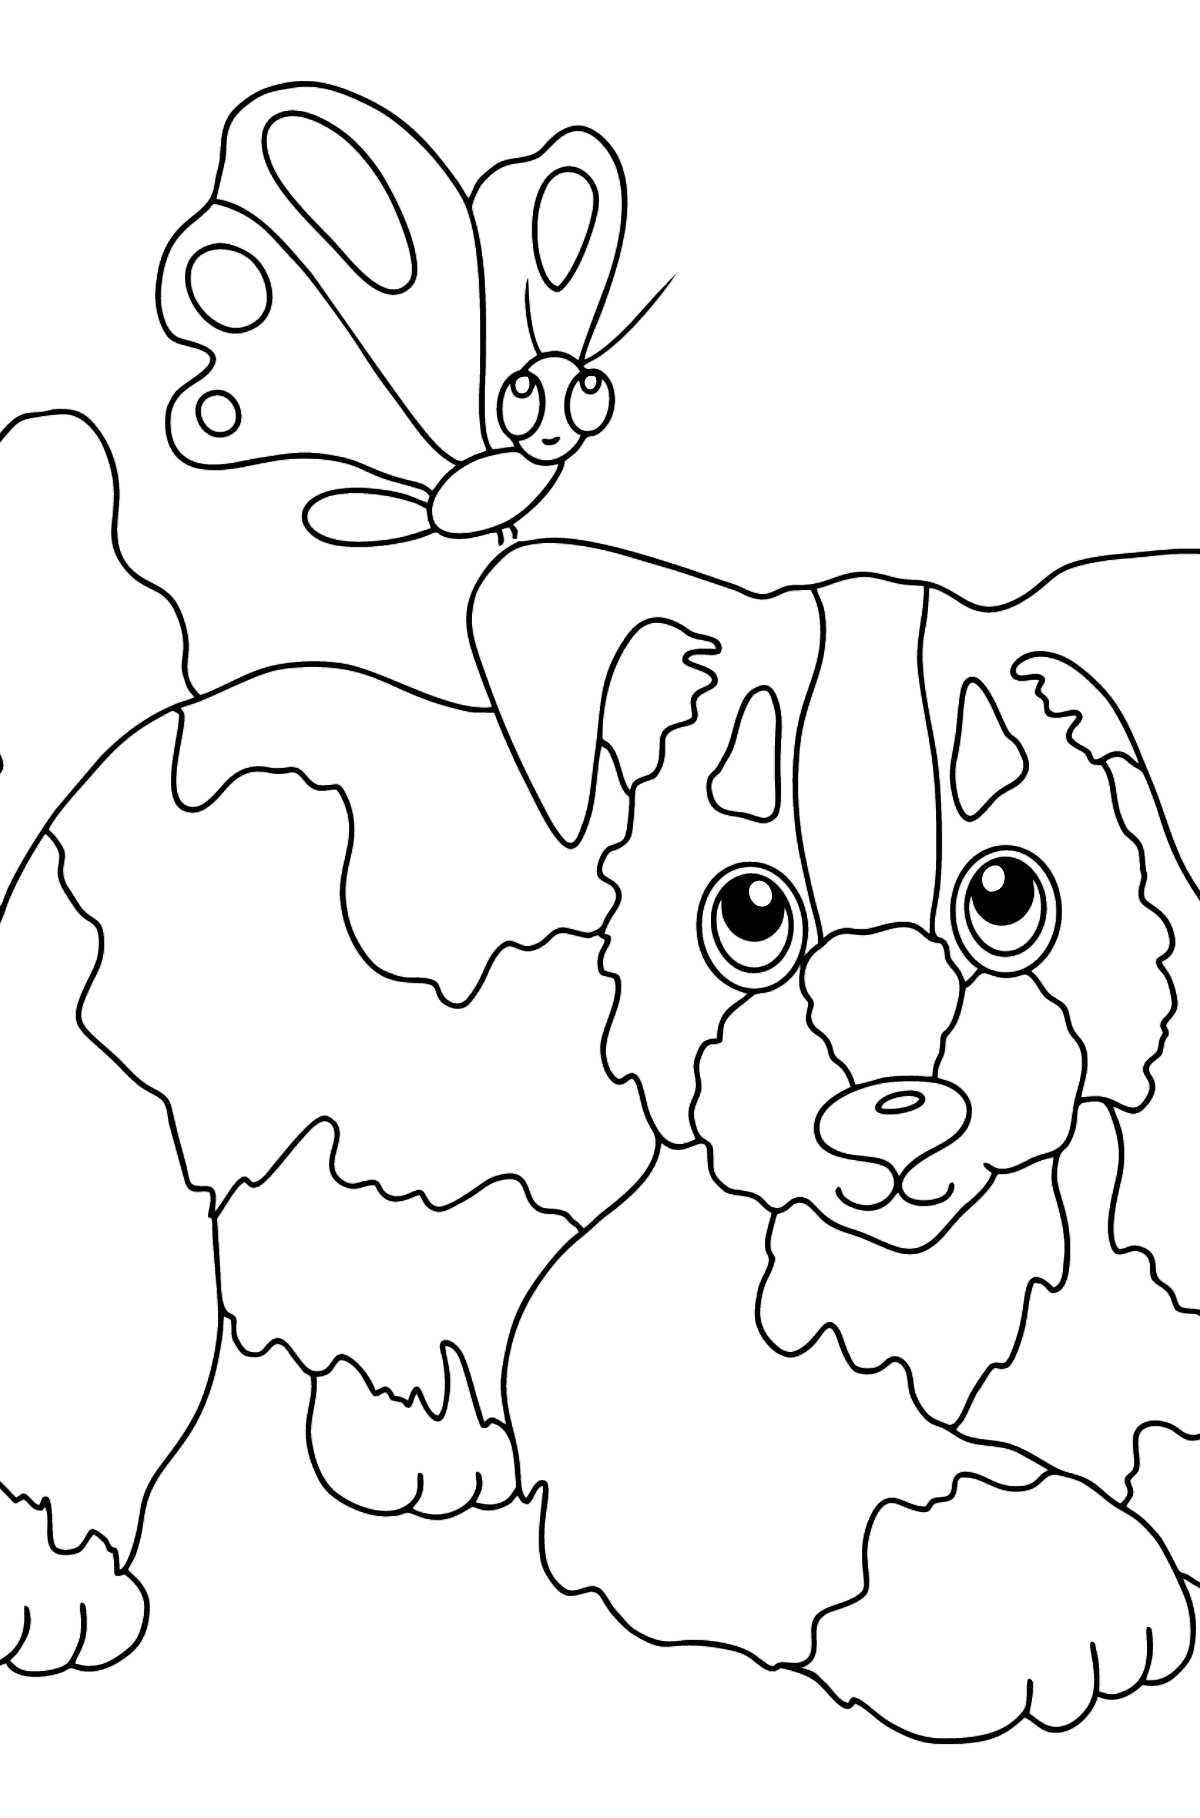 Målarbild hund och fjäril (lätt) - Målarbilder För barn